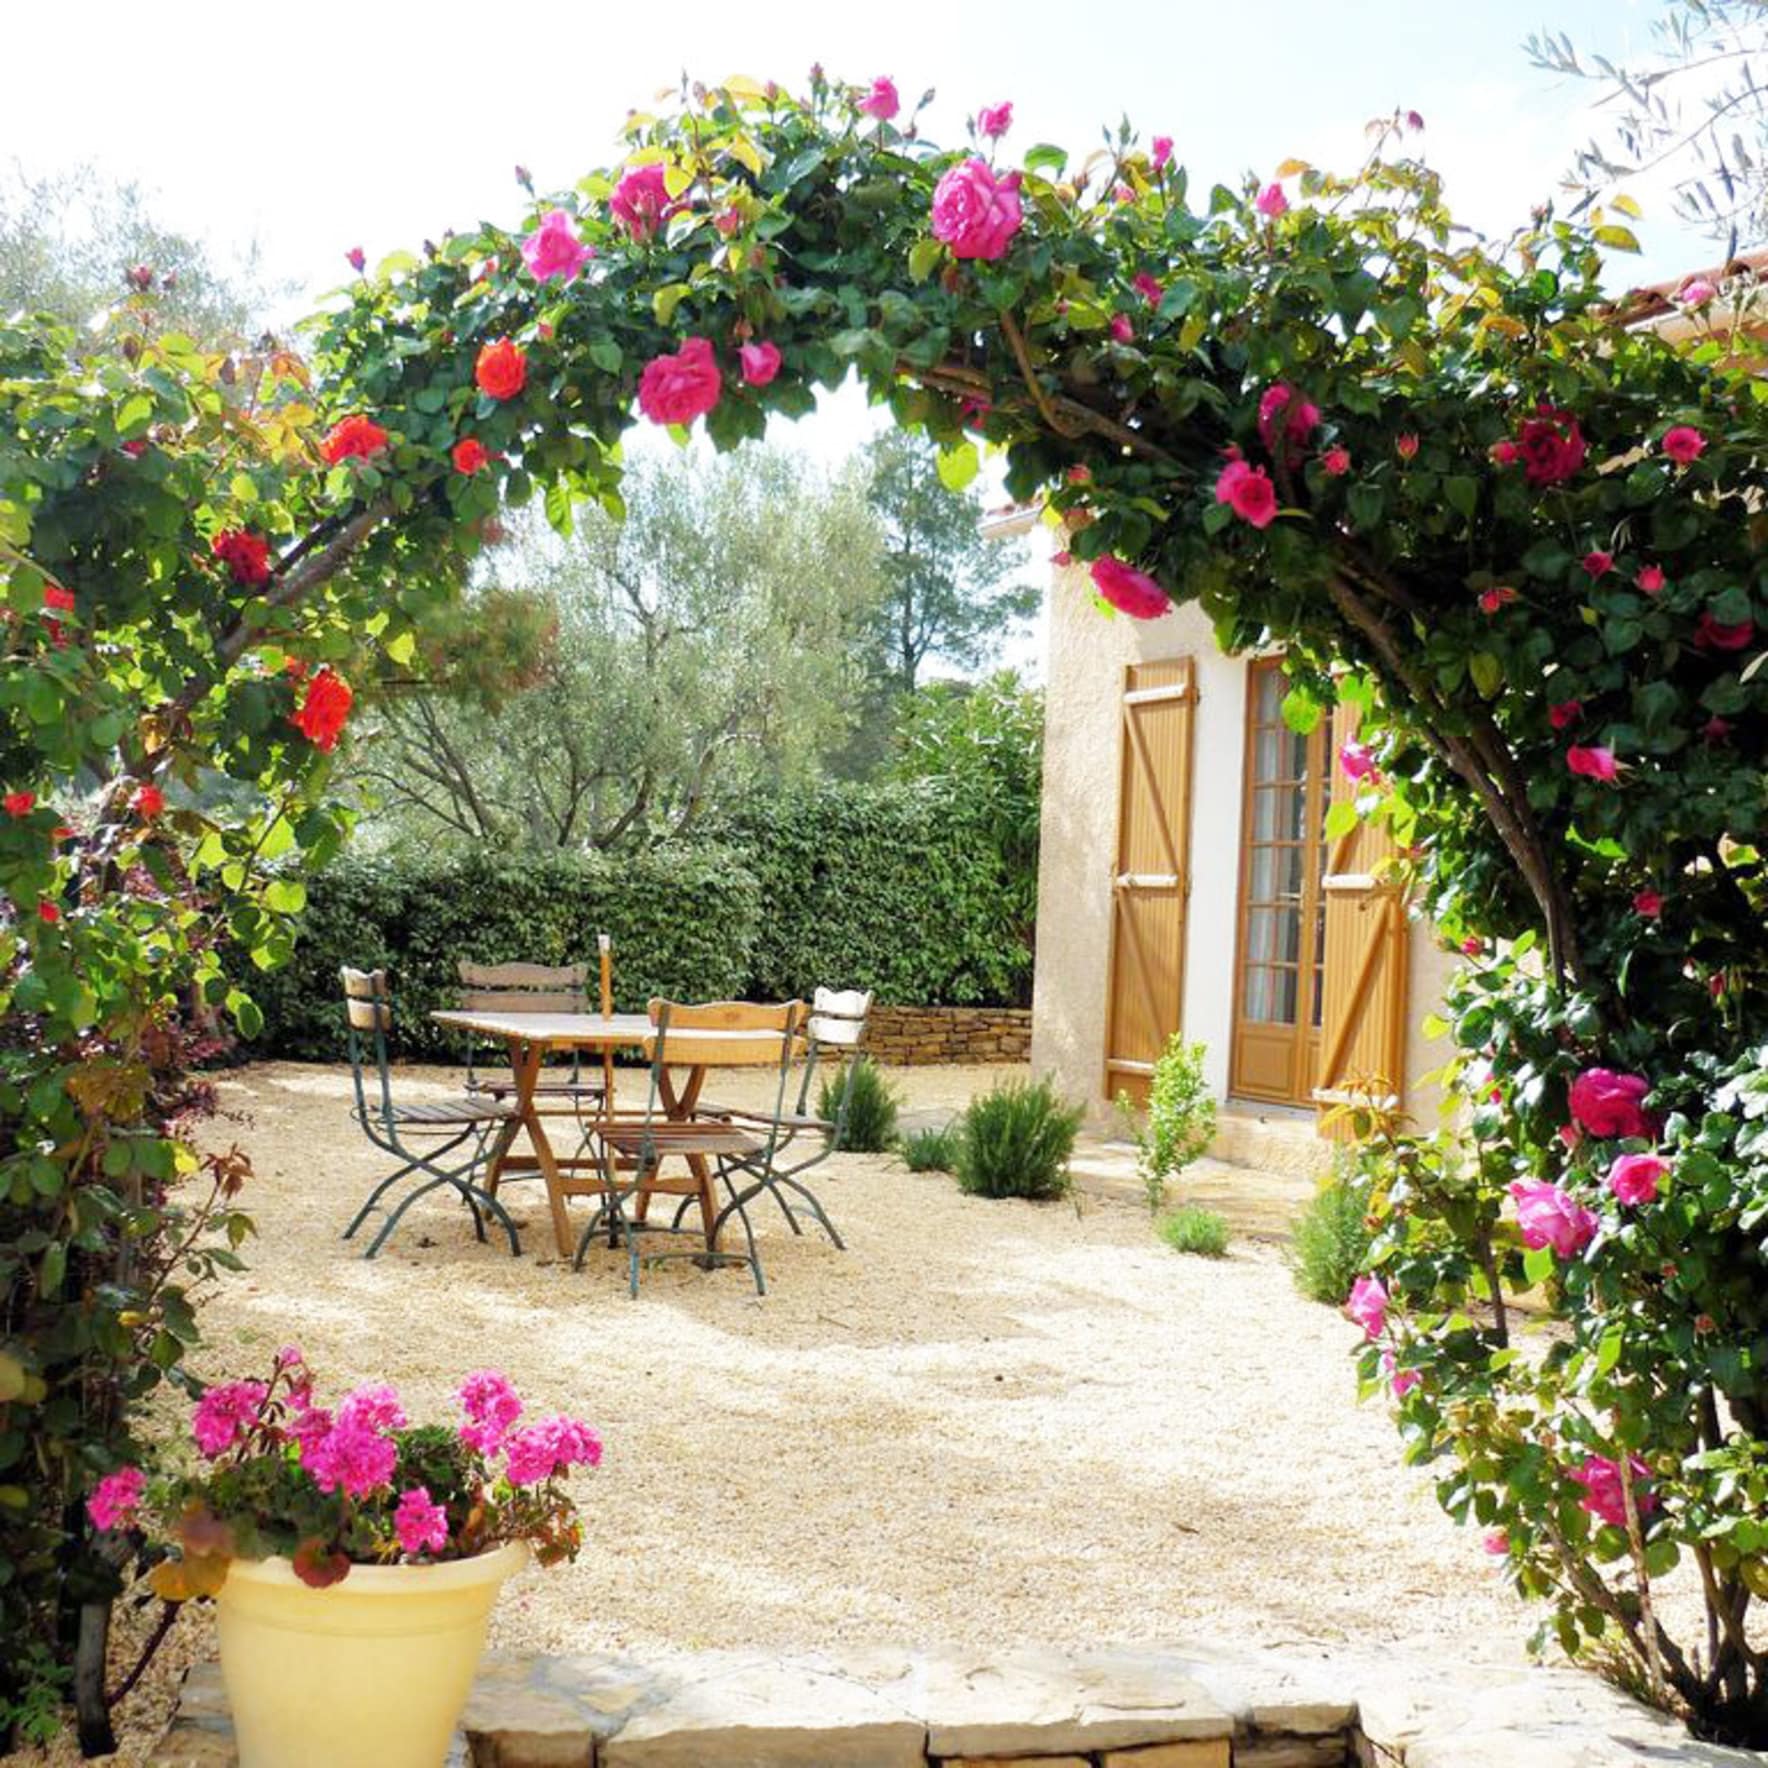 Location de vacances à Aubagne : gîte au cœur de la Provence